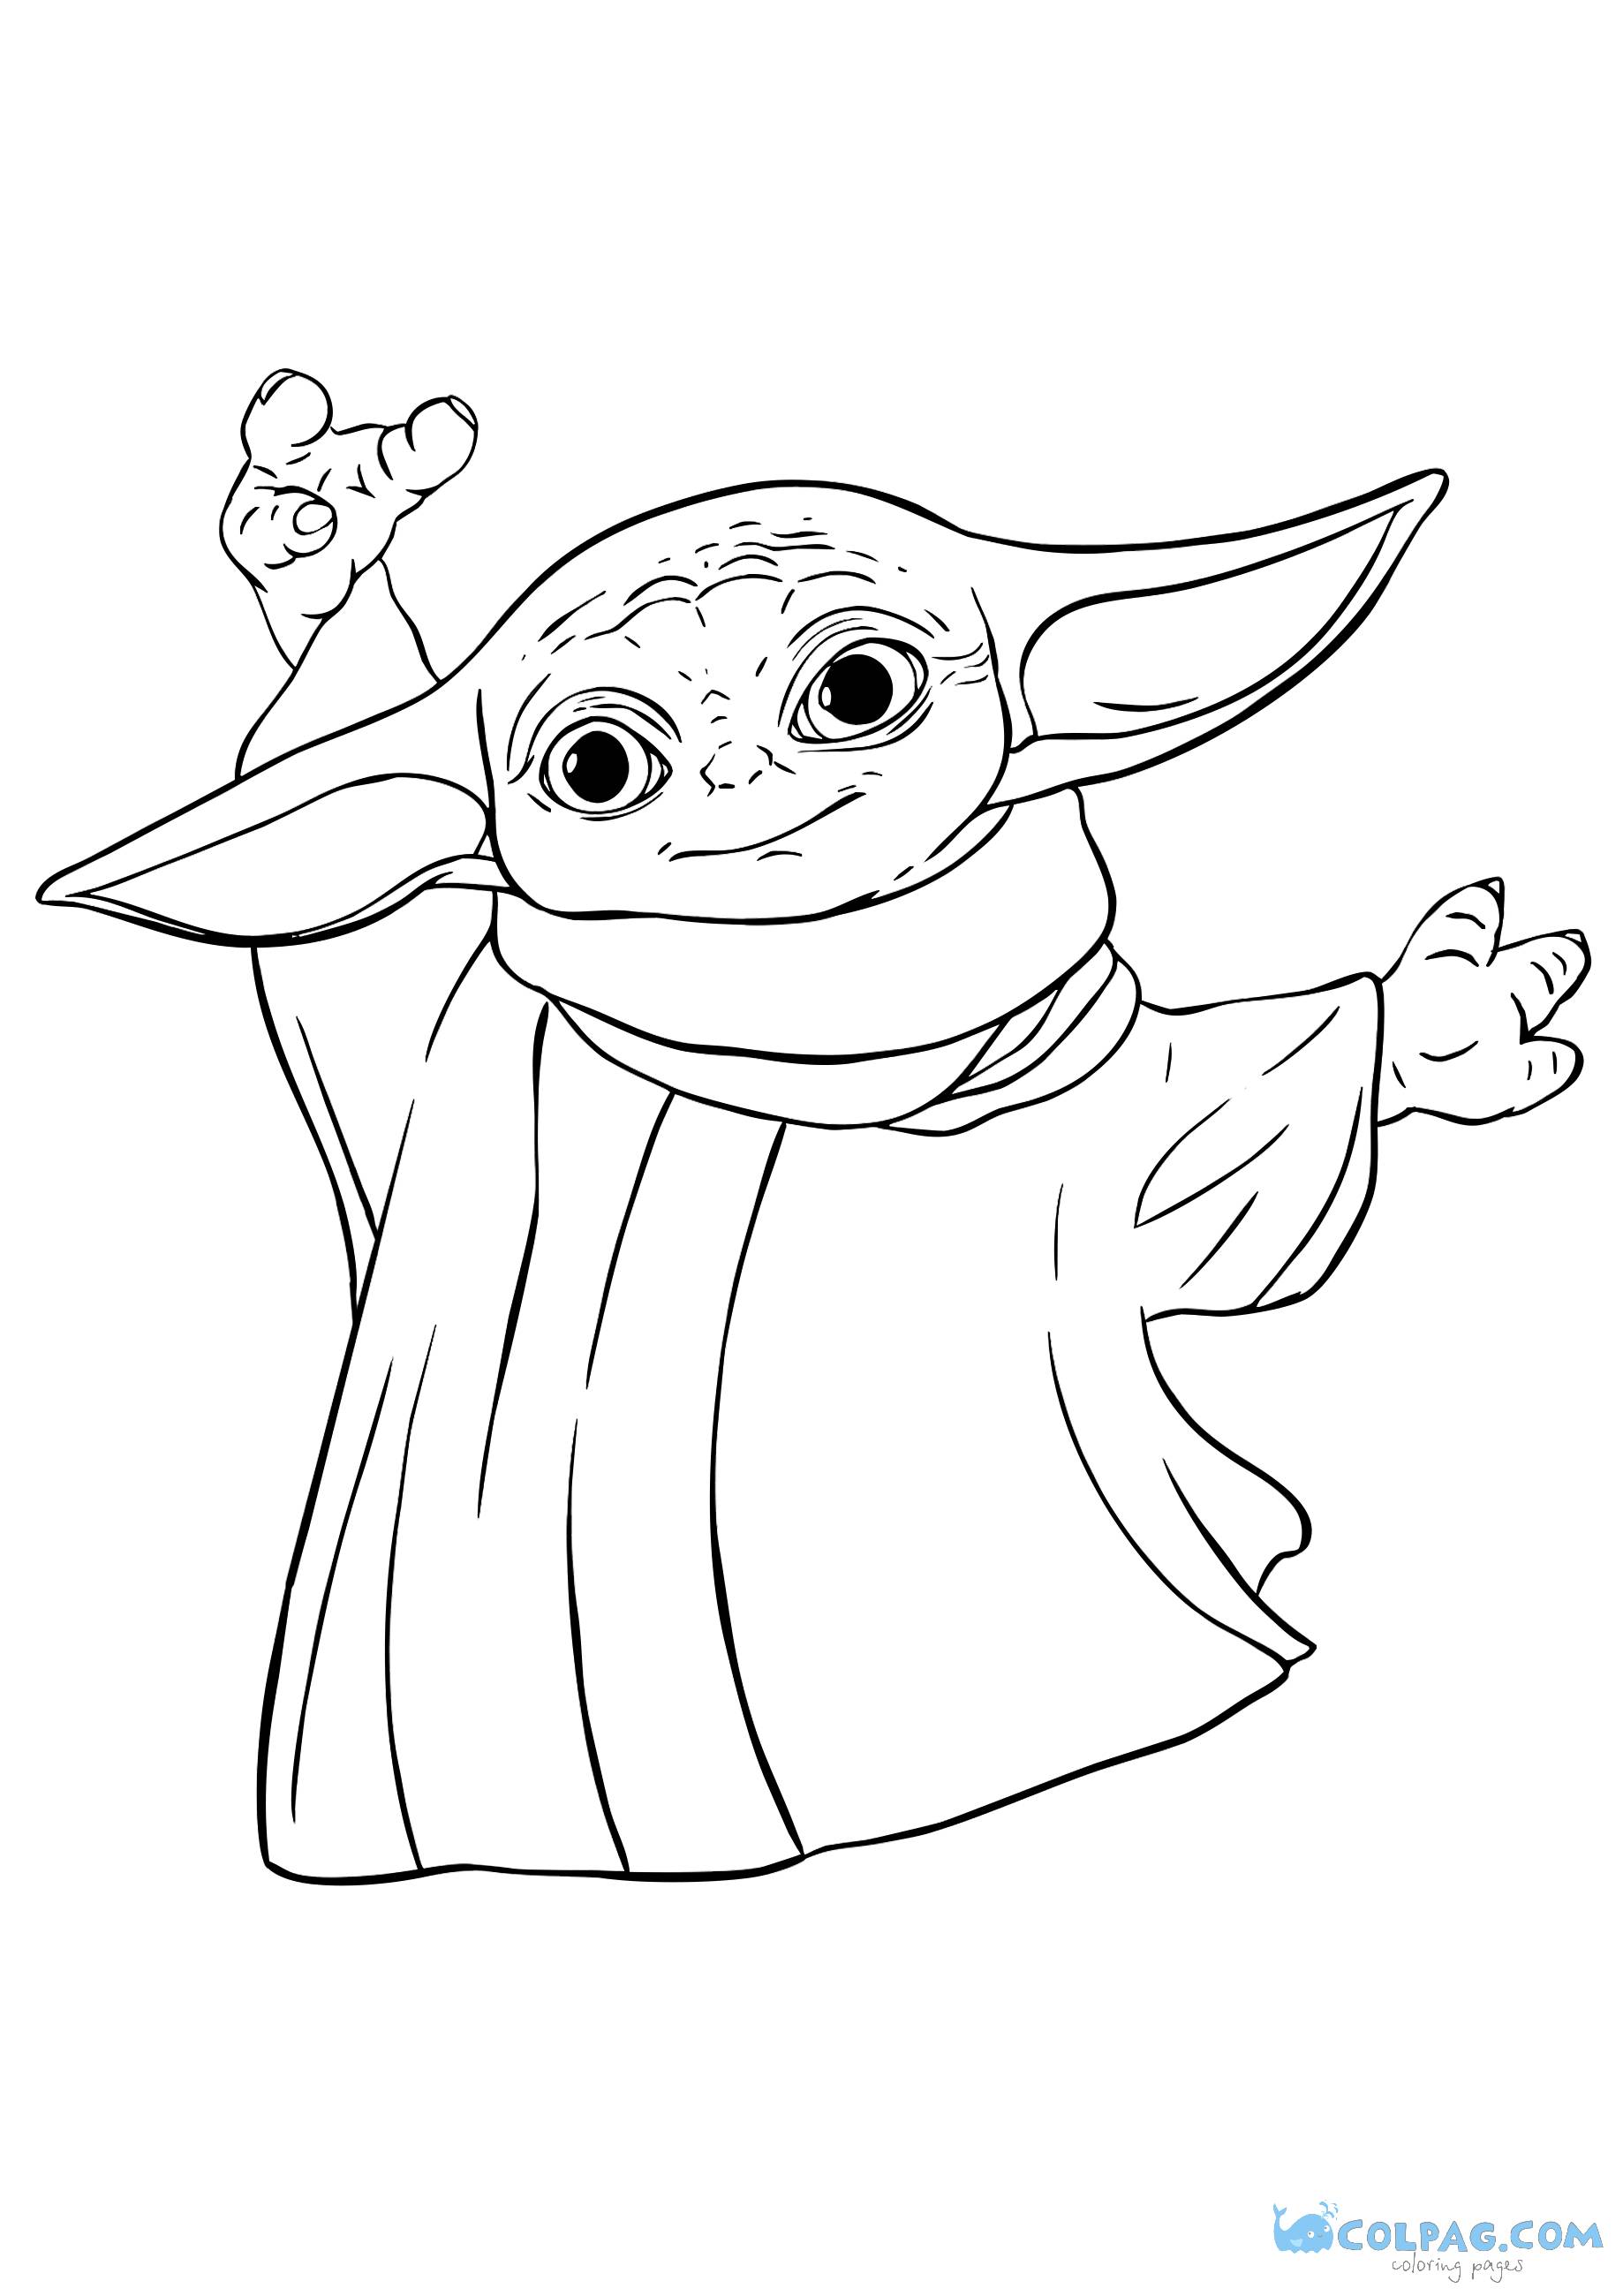 Baby Yoda nuove disegni da colorare stampabili